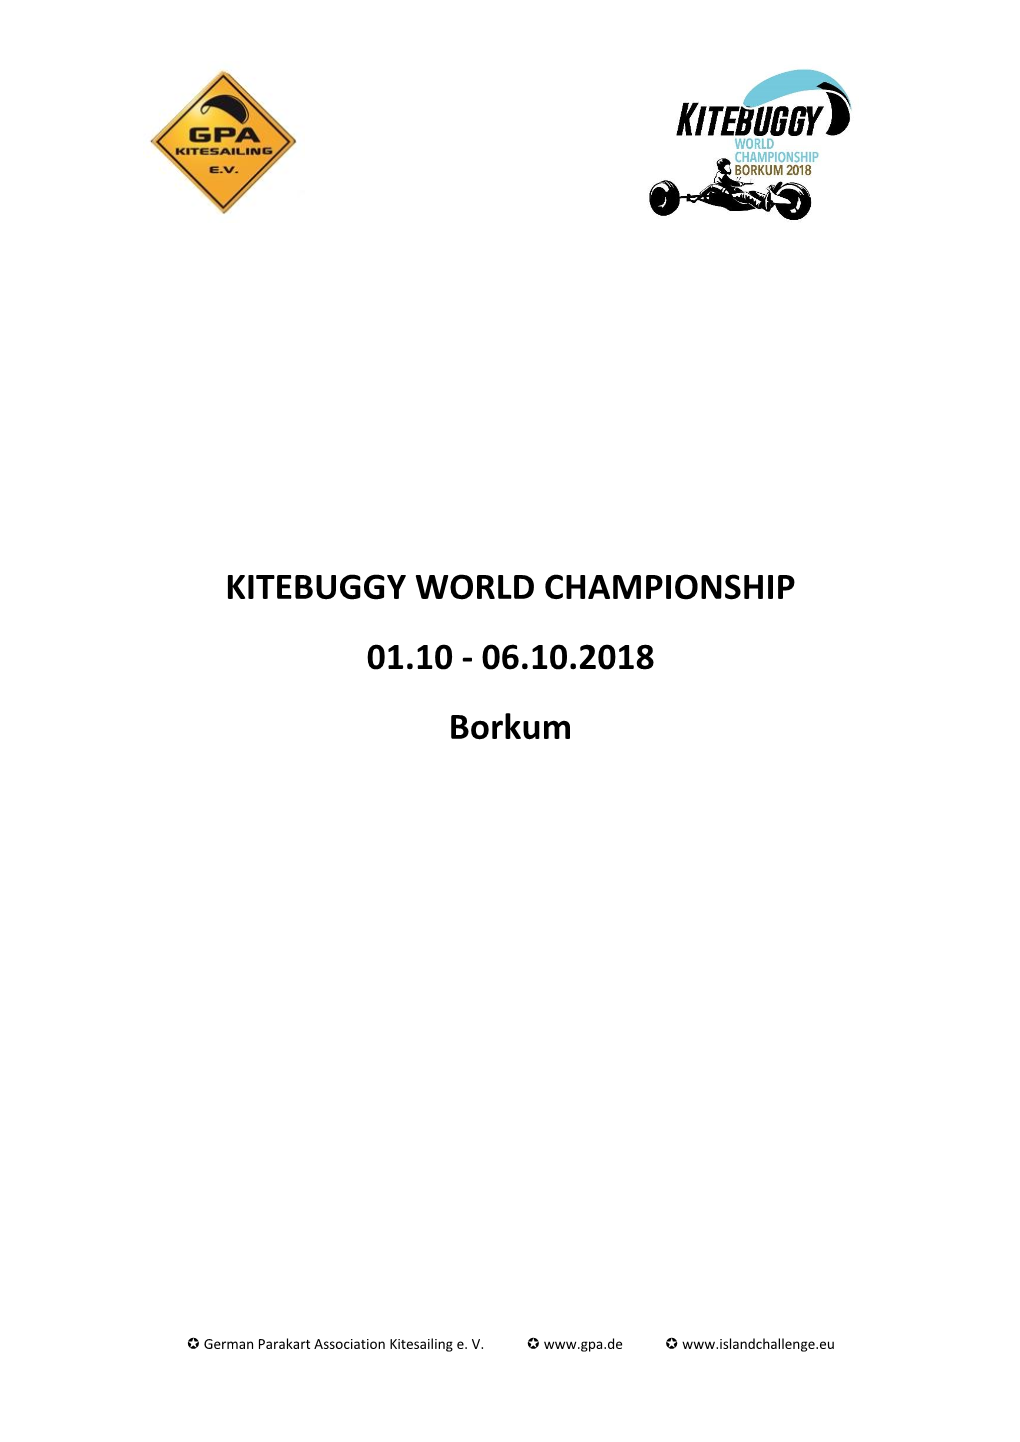 KITEBUGGY WORLD CHAMPIONSHIP 01.10 - 06.10.2018 Borkum